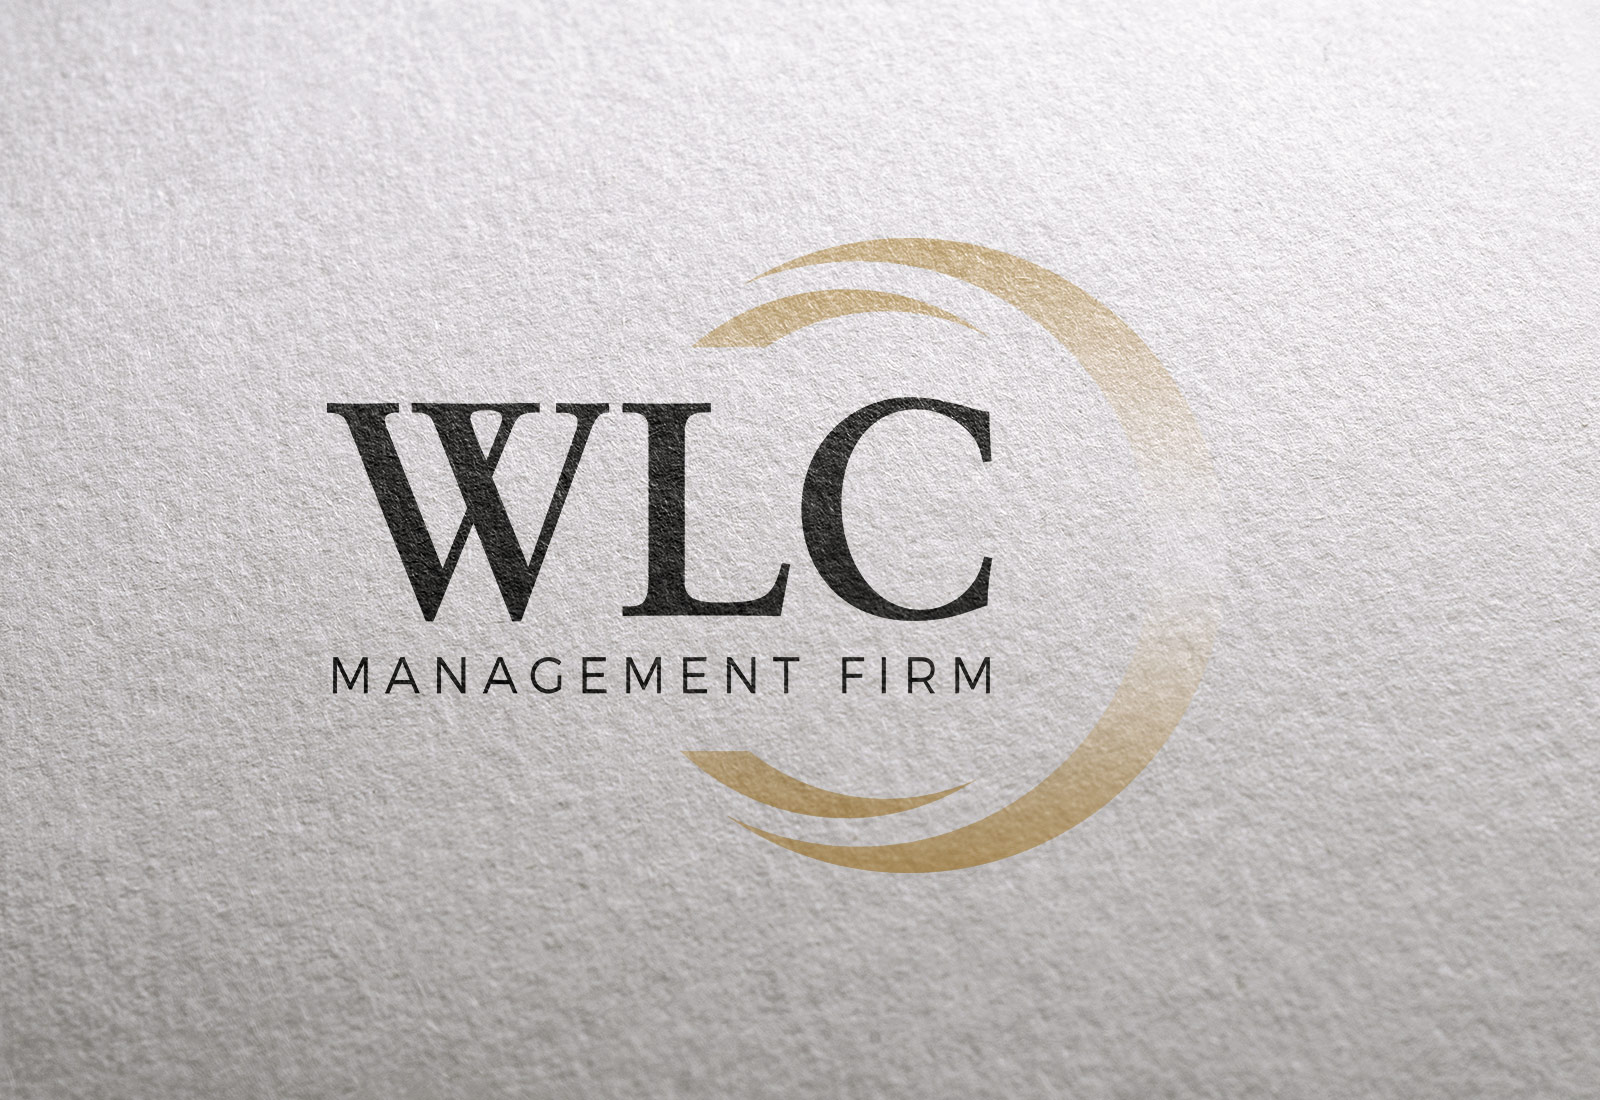 WLC Management Firm Logo